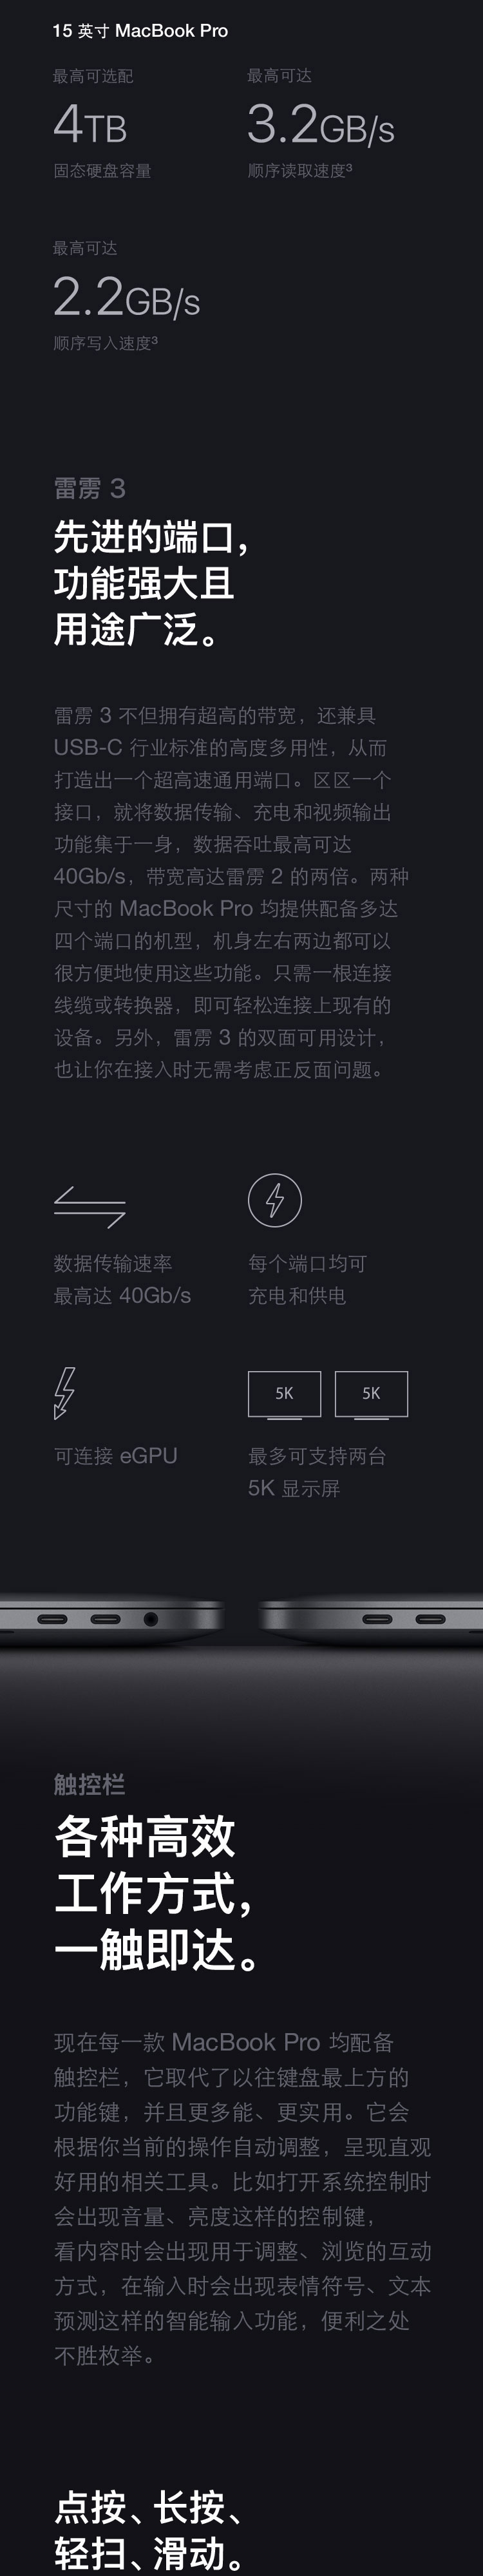 中山手机网 苹果(apple) macbook pro 2019手机专卖